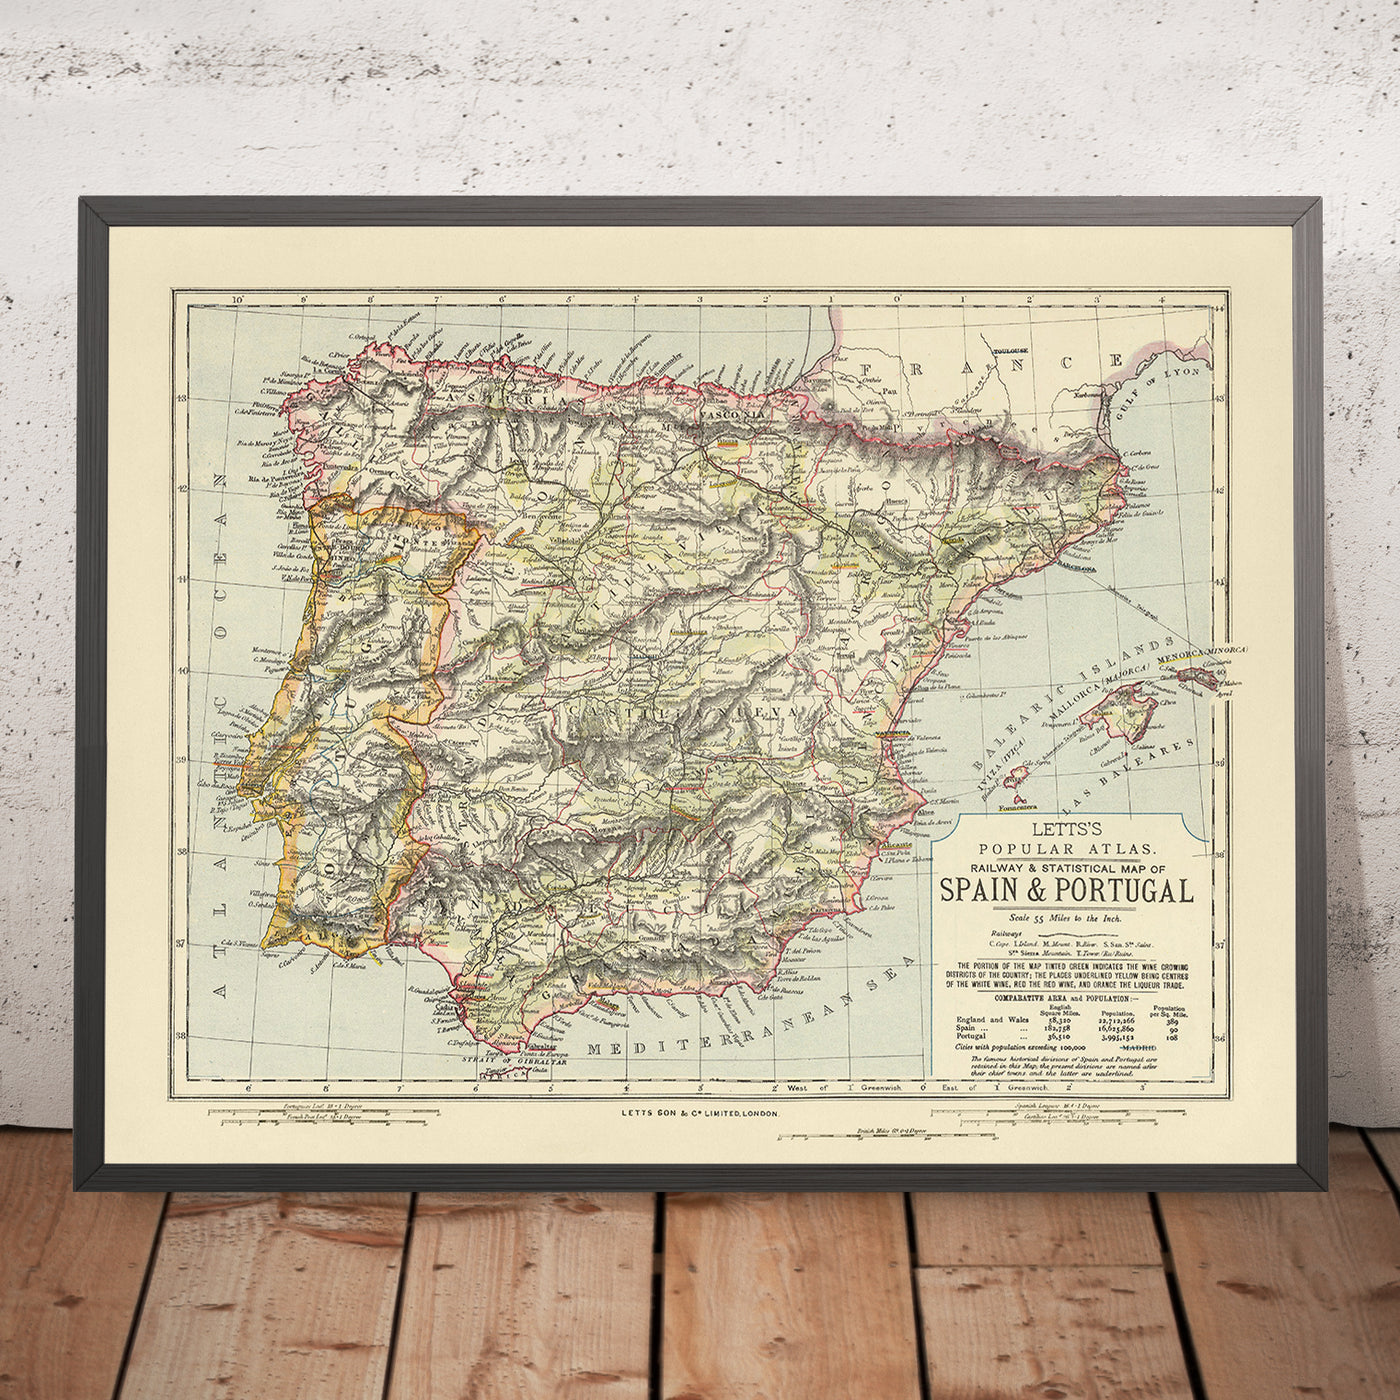 Alte thematische Karte von Spanien und Portugal, 1883: Madrid, Lissabon, Pyrenäen, Fluss Guadalquivir, Weinregionen